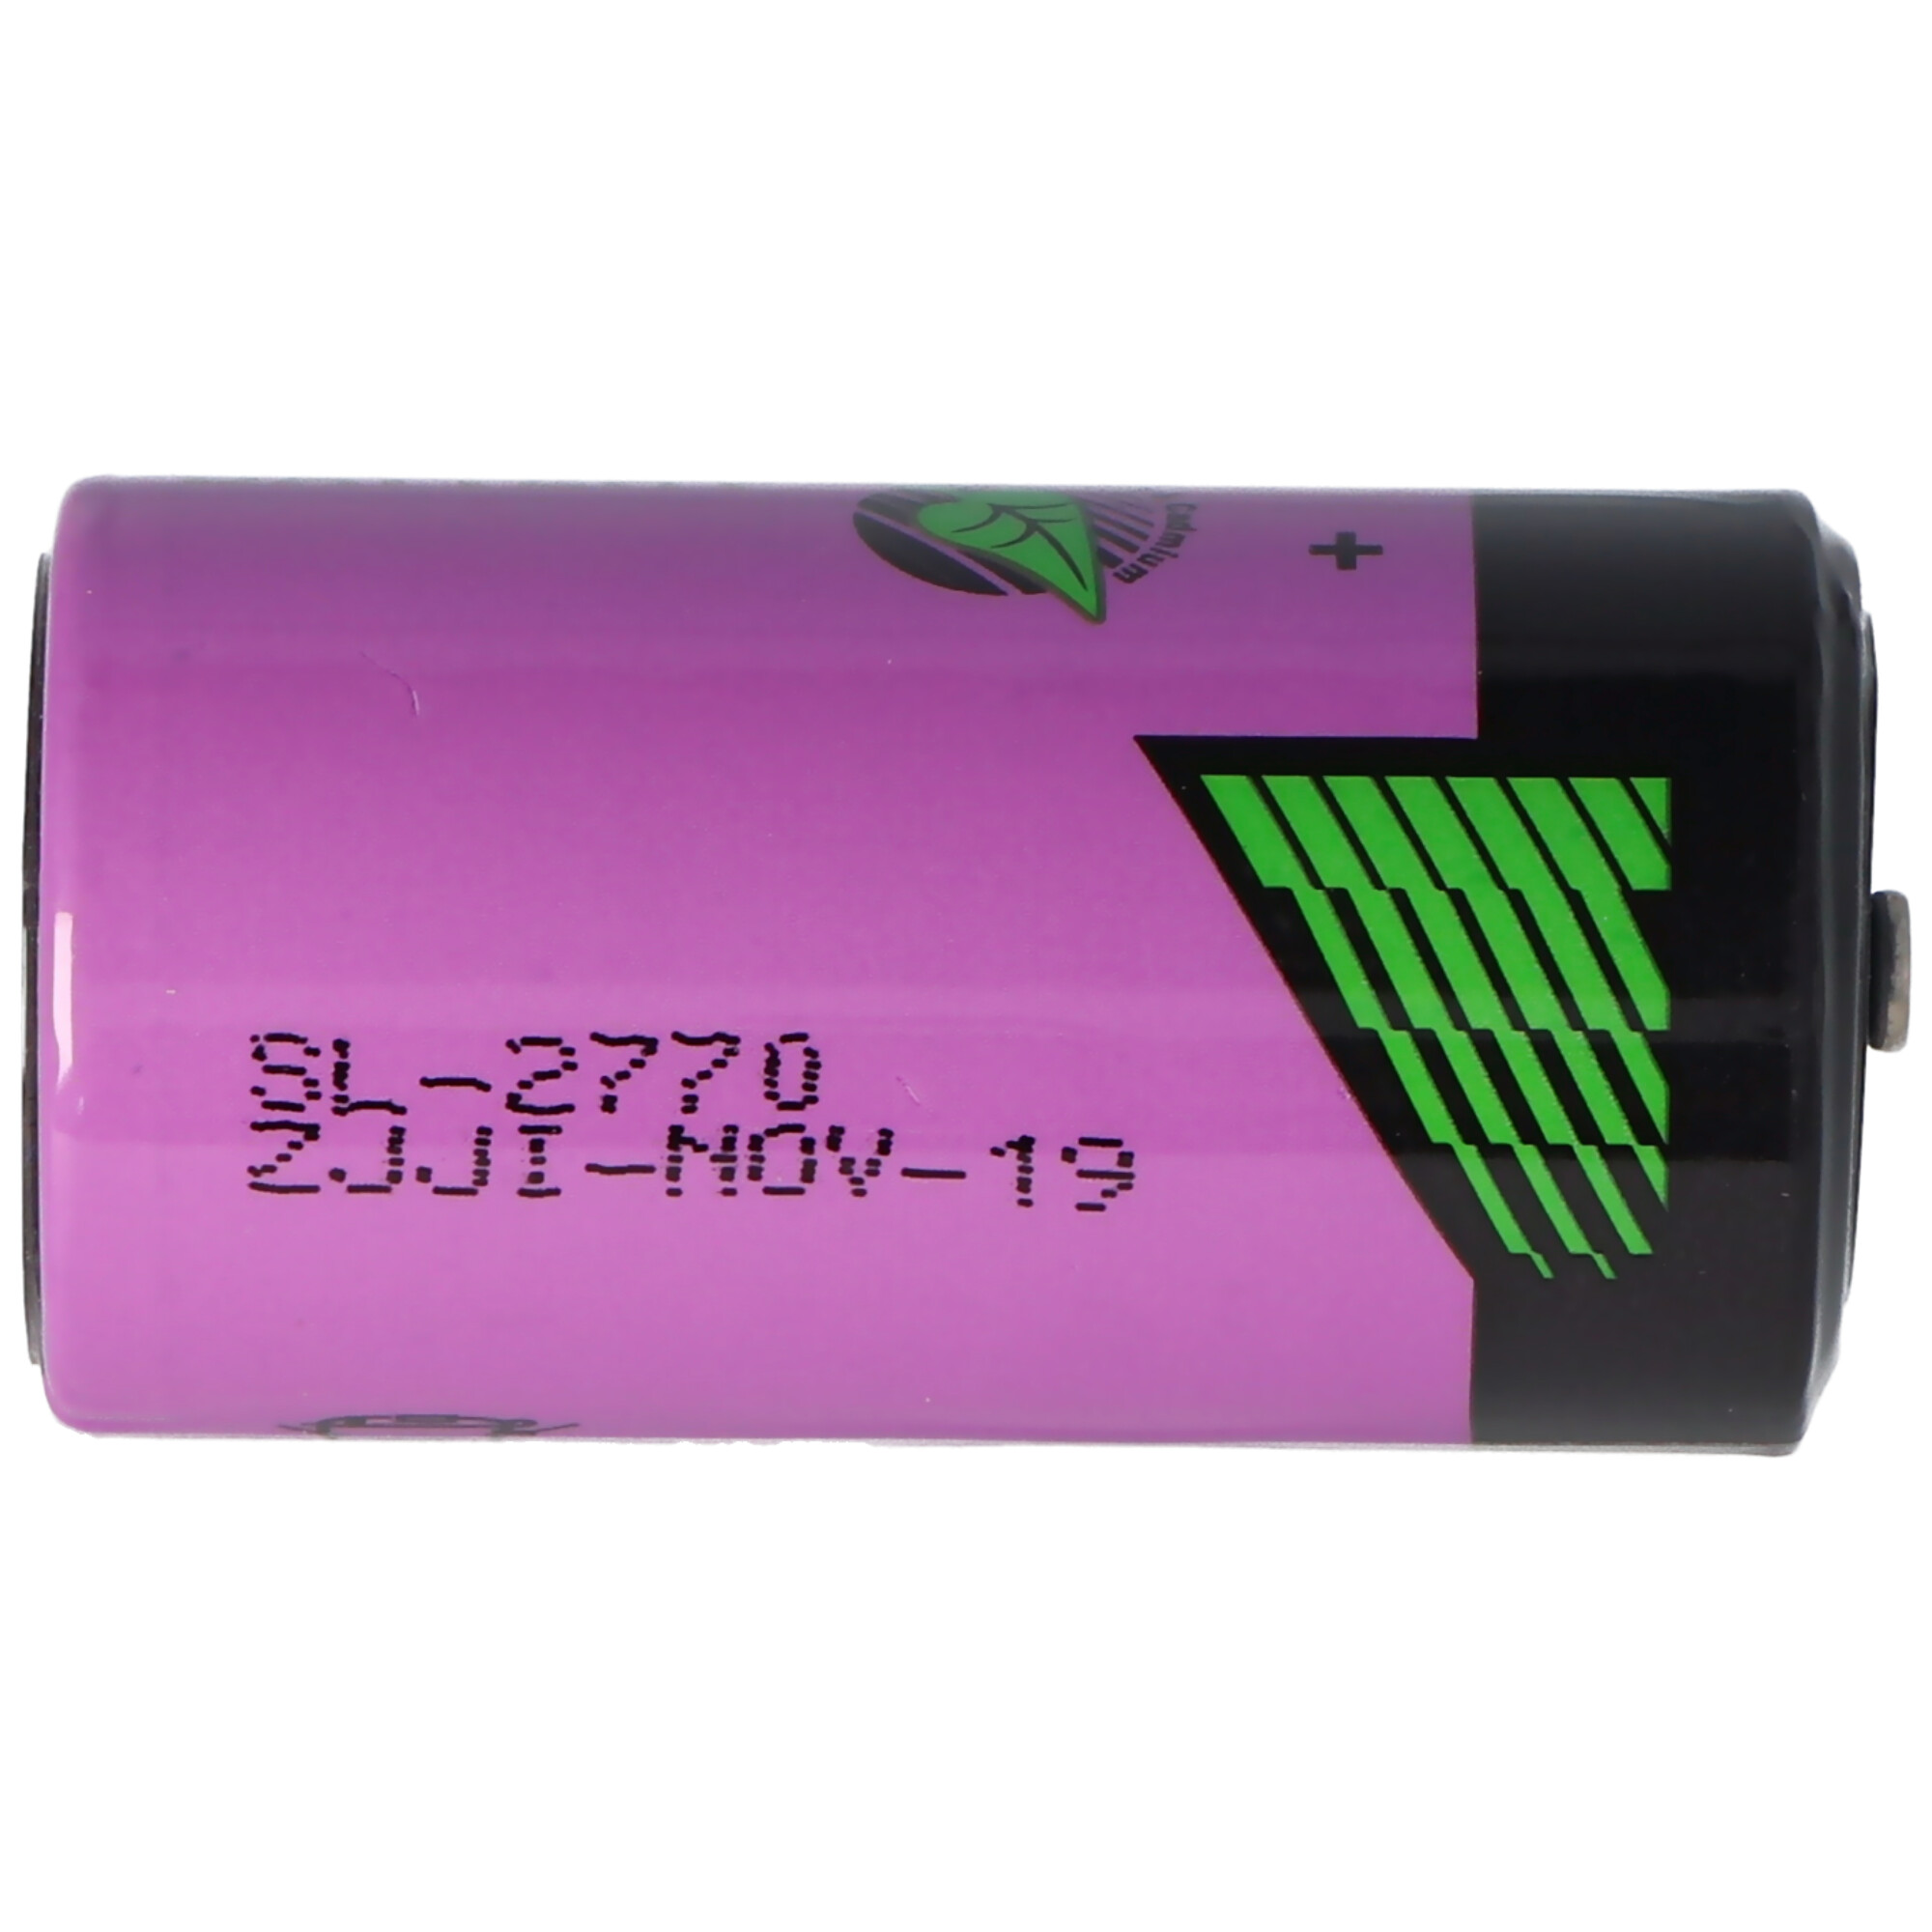 SL-2770 Sonnenschein Inorganic Lithium Battery SL-770, SL-770/S Standard SL770